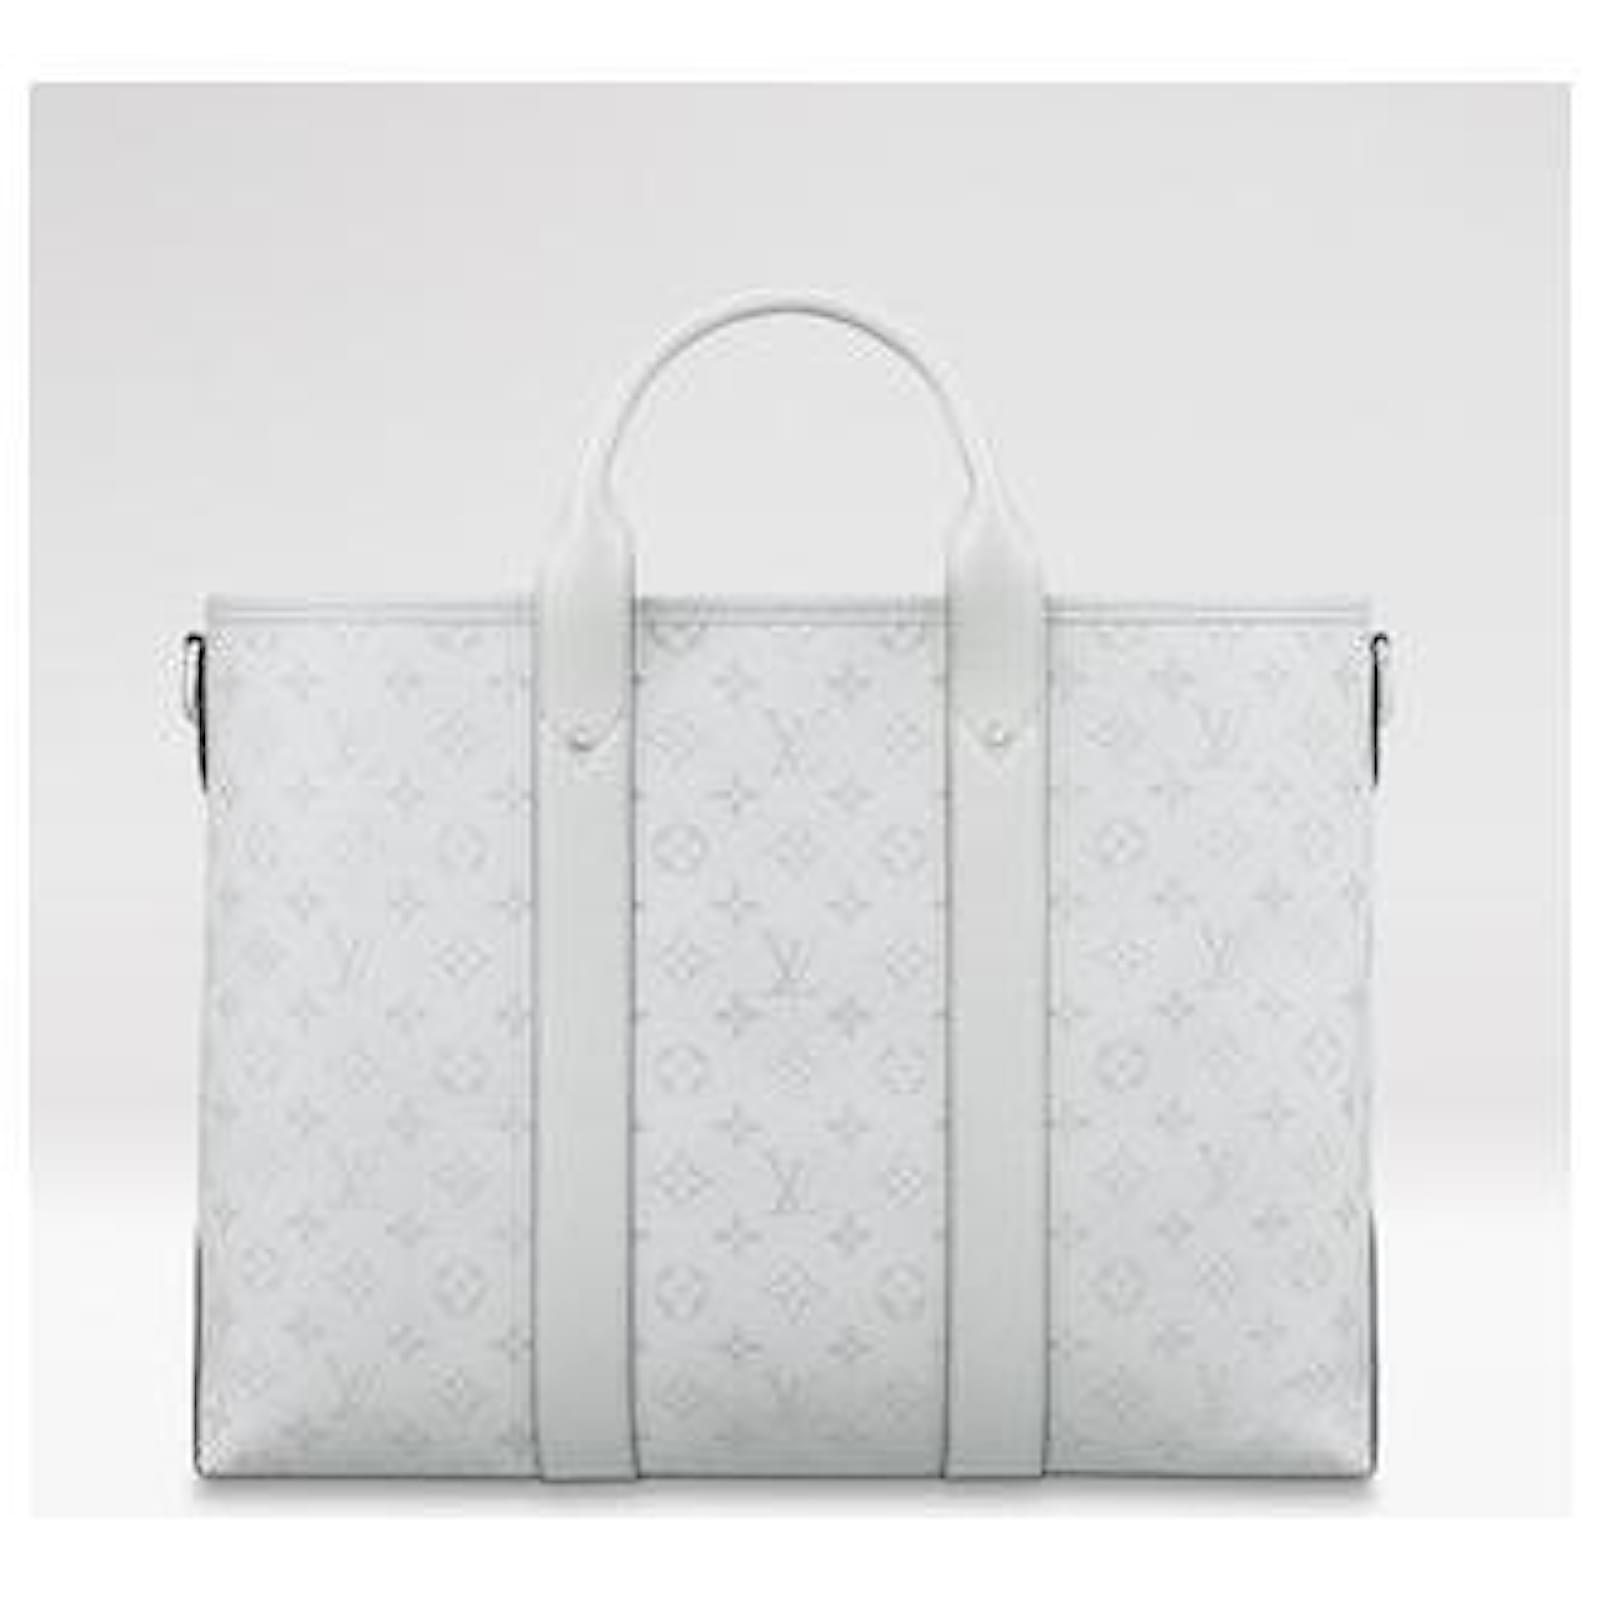 US$ 290.00 - Louis Vuitton - WEEKEND TOTE NM handbag 